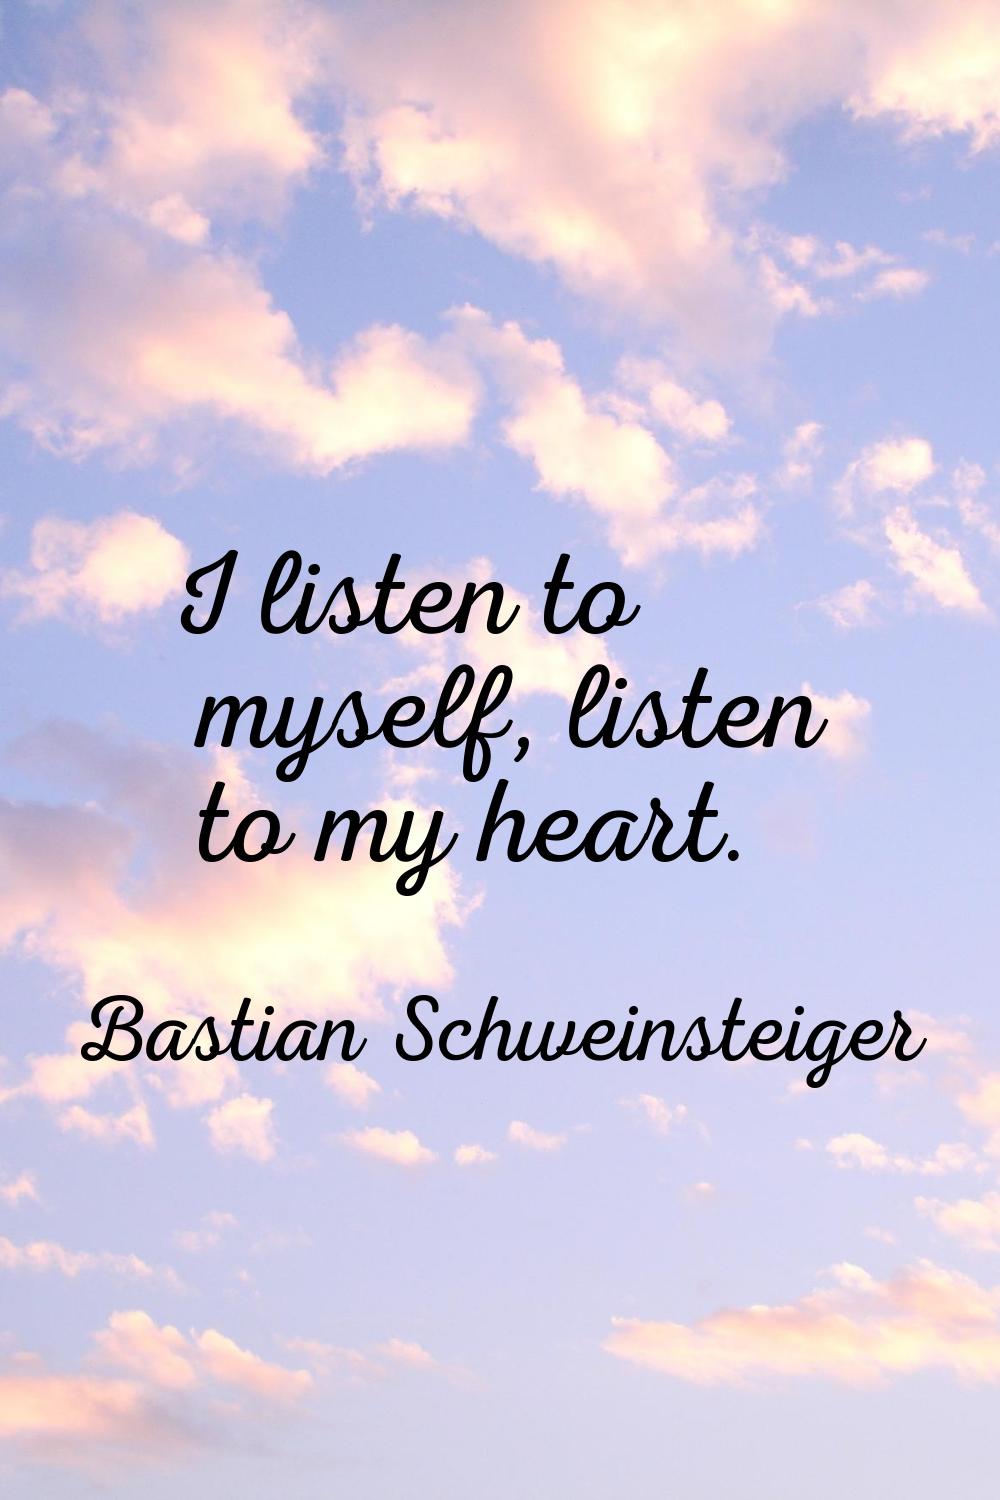 I listen to myself, listen to my heart.